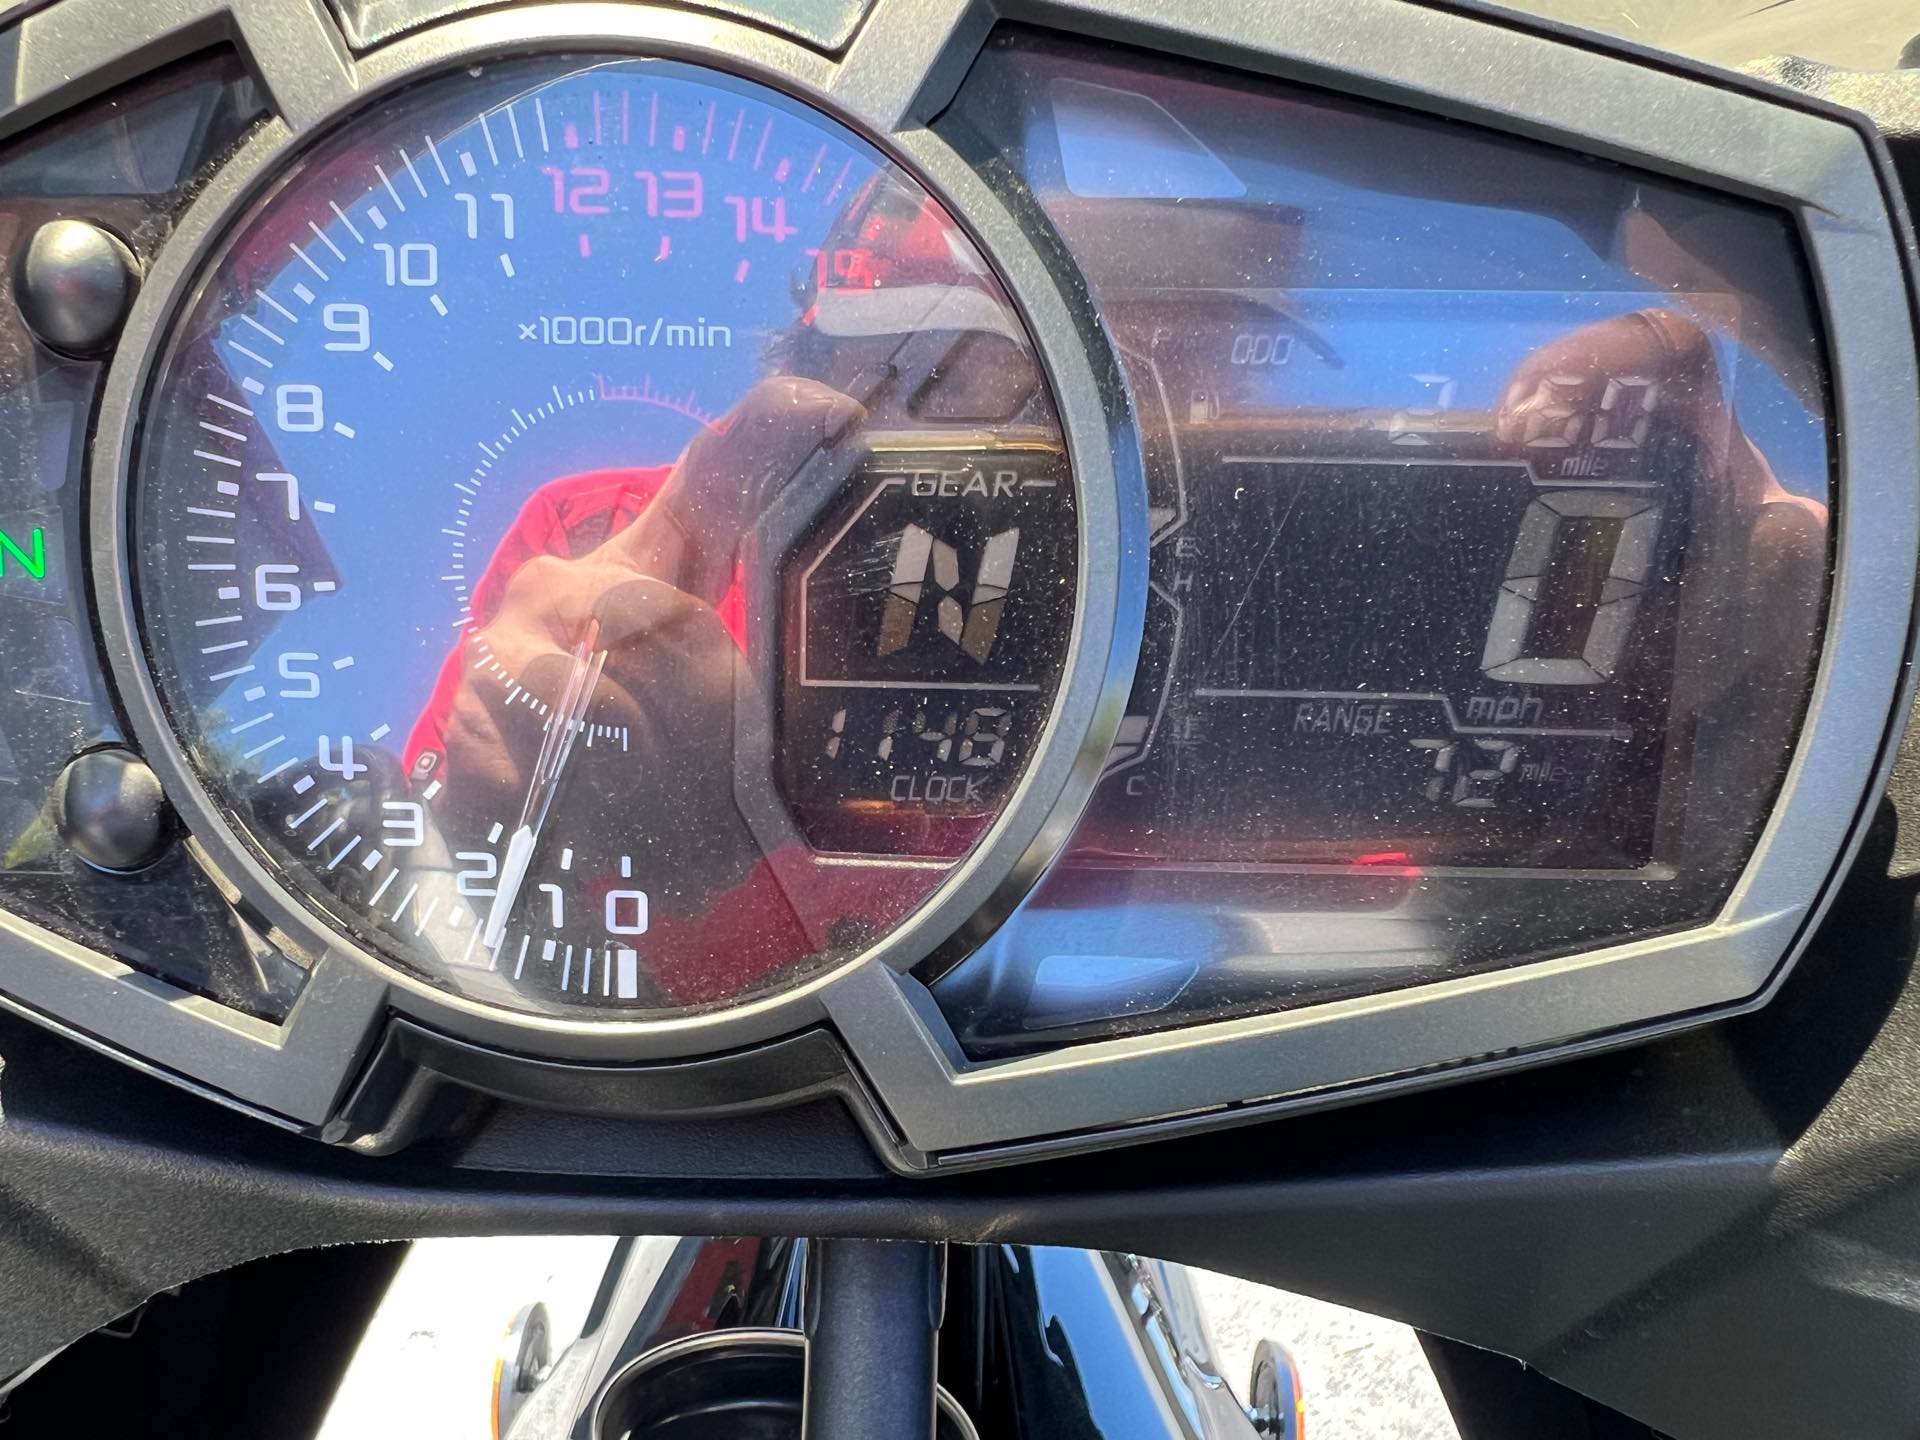 2021 Kawasaki Ninja 400 Base at Aces Motorcycles - Fort Collins